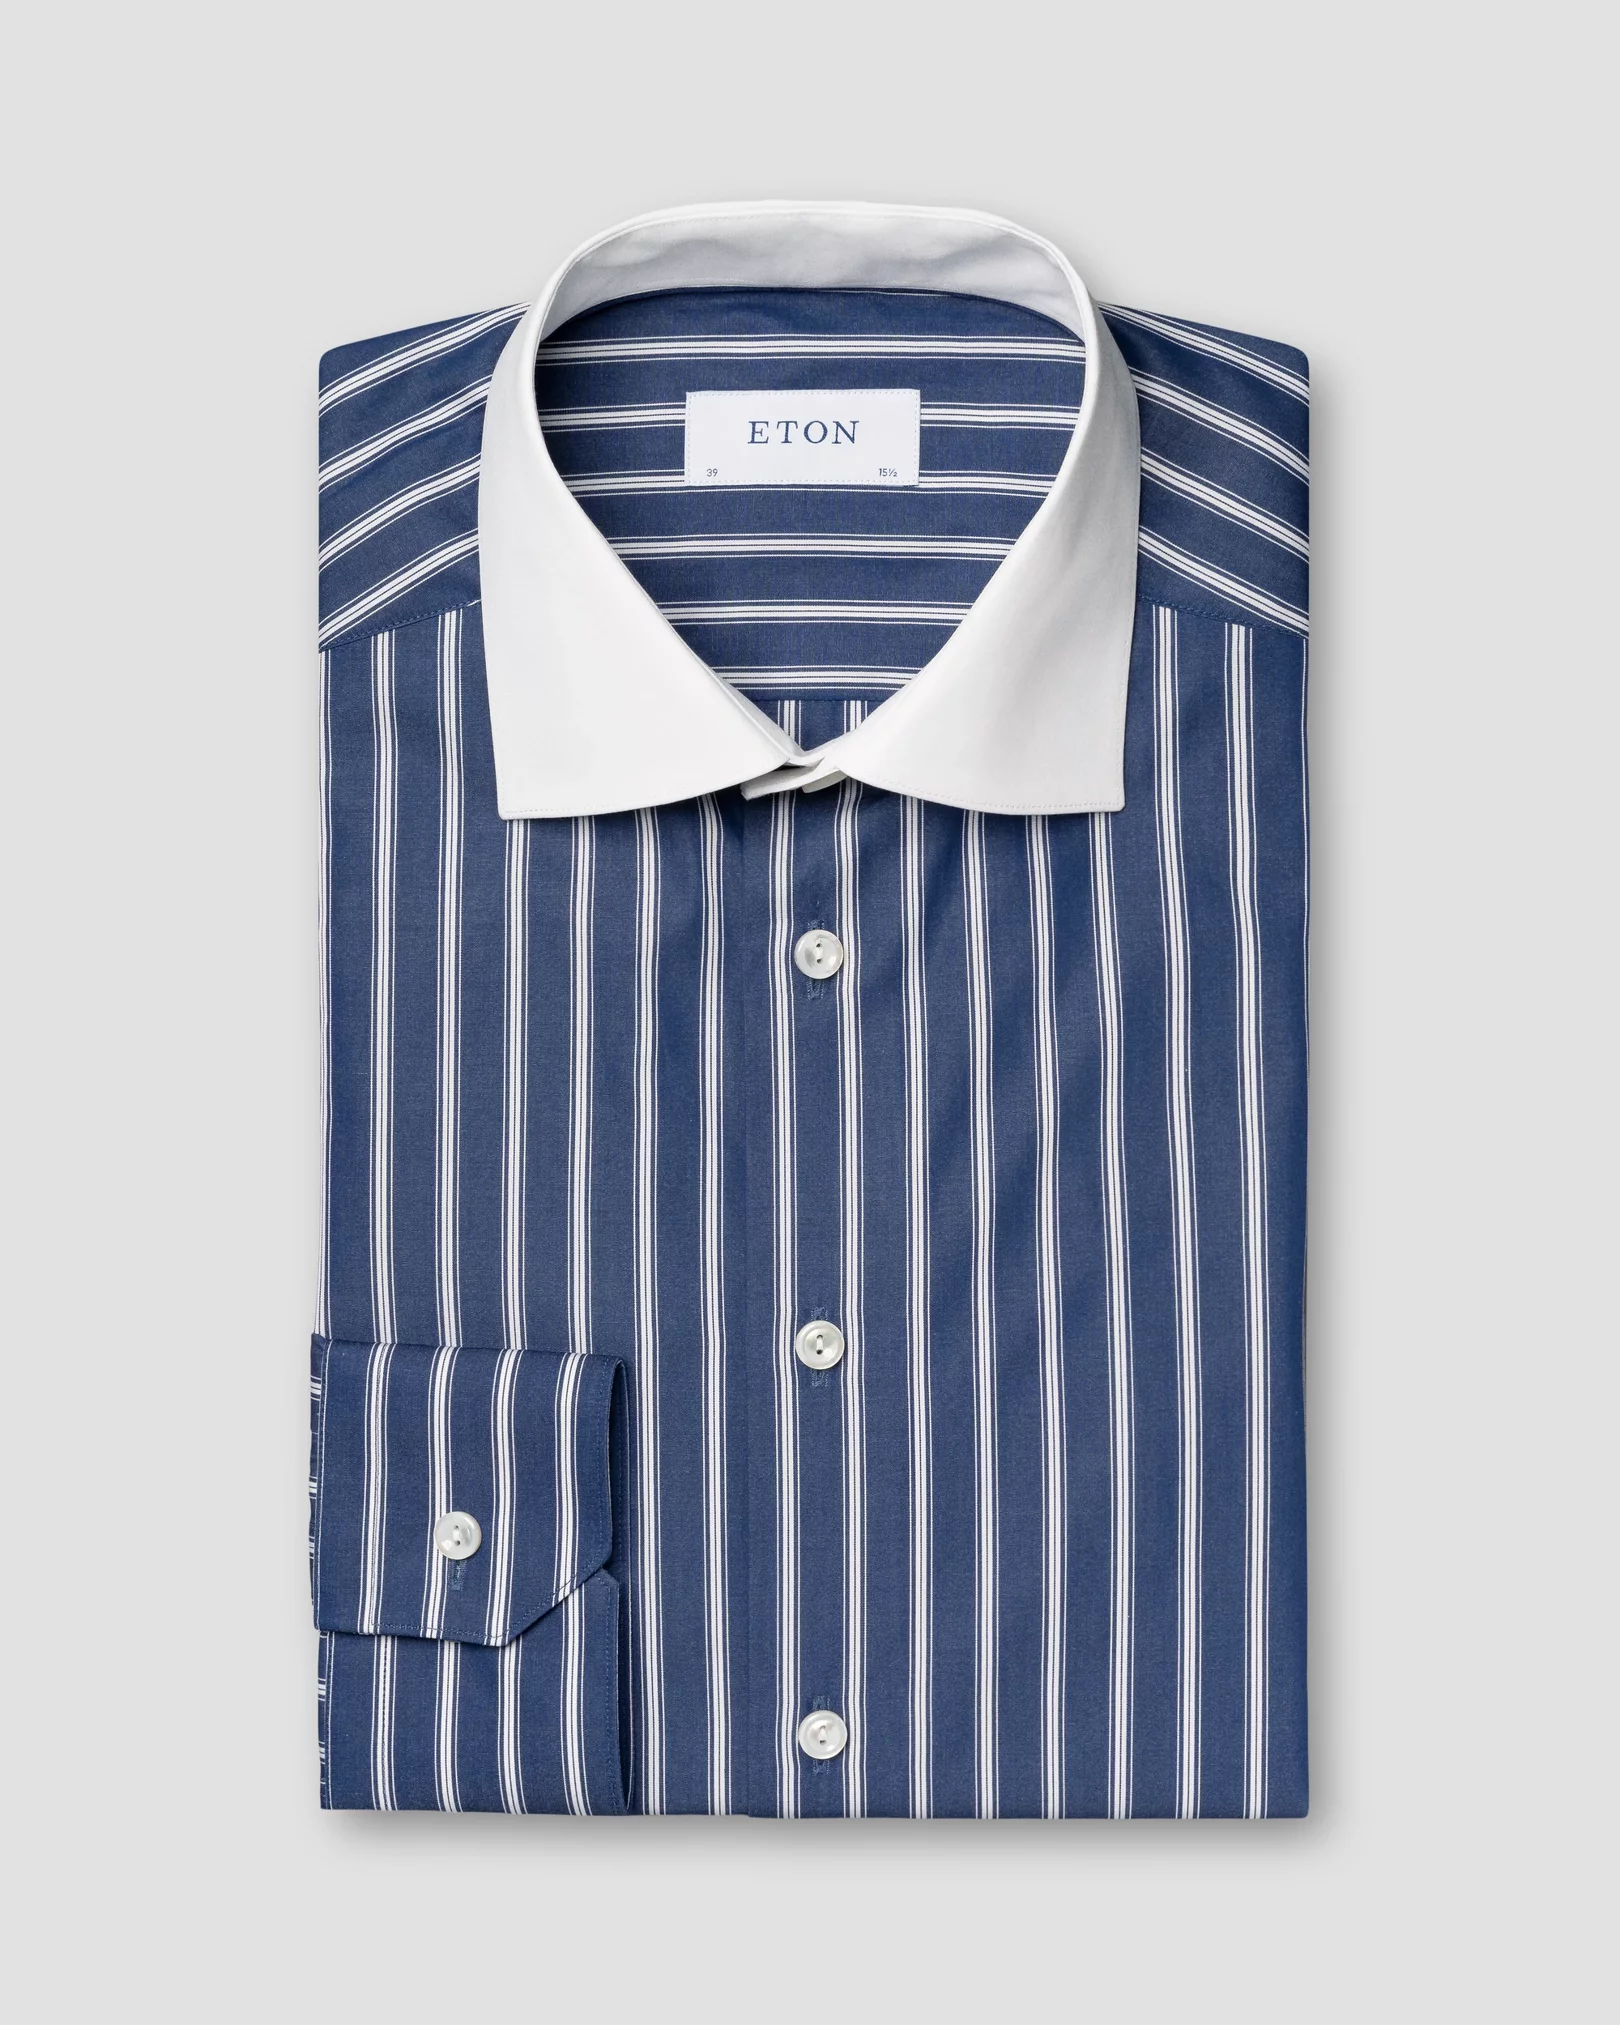 Blau gestreiftes Hemd aus feinem Popeline mit weißem Kragen - Eton